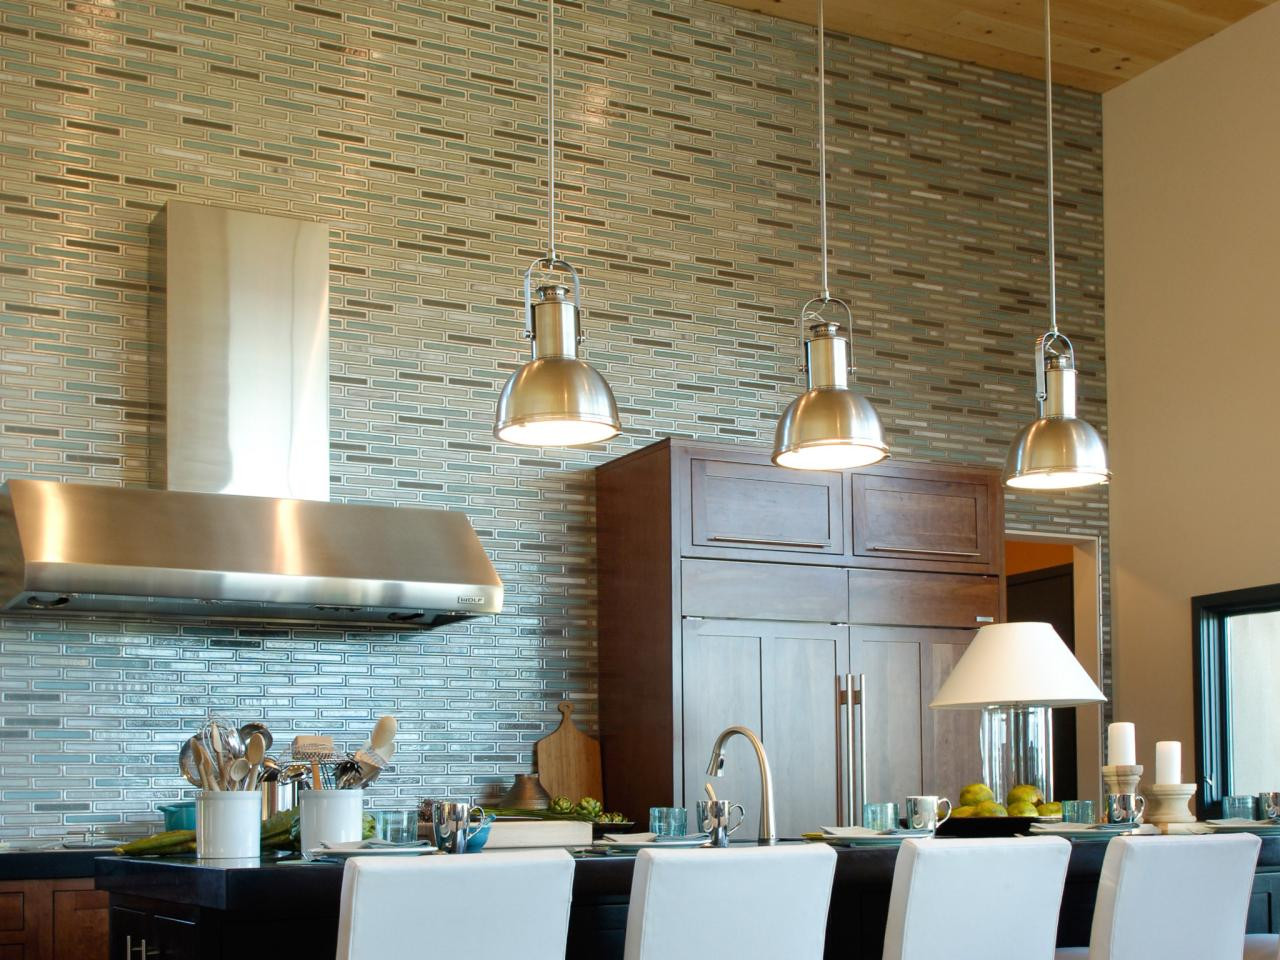 Kitchen Backsplash Idea Pictures
 75 Kitchen Backsplash Ideas for 2020 Tile Glass Metal etc